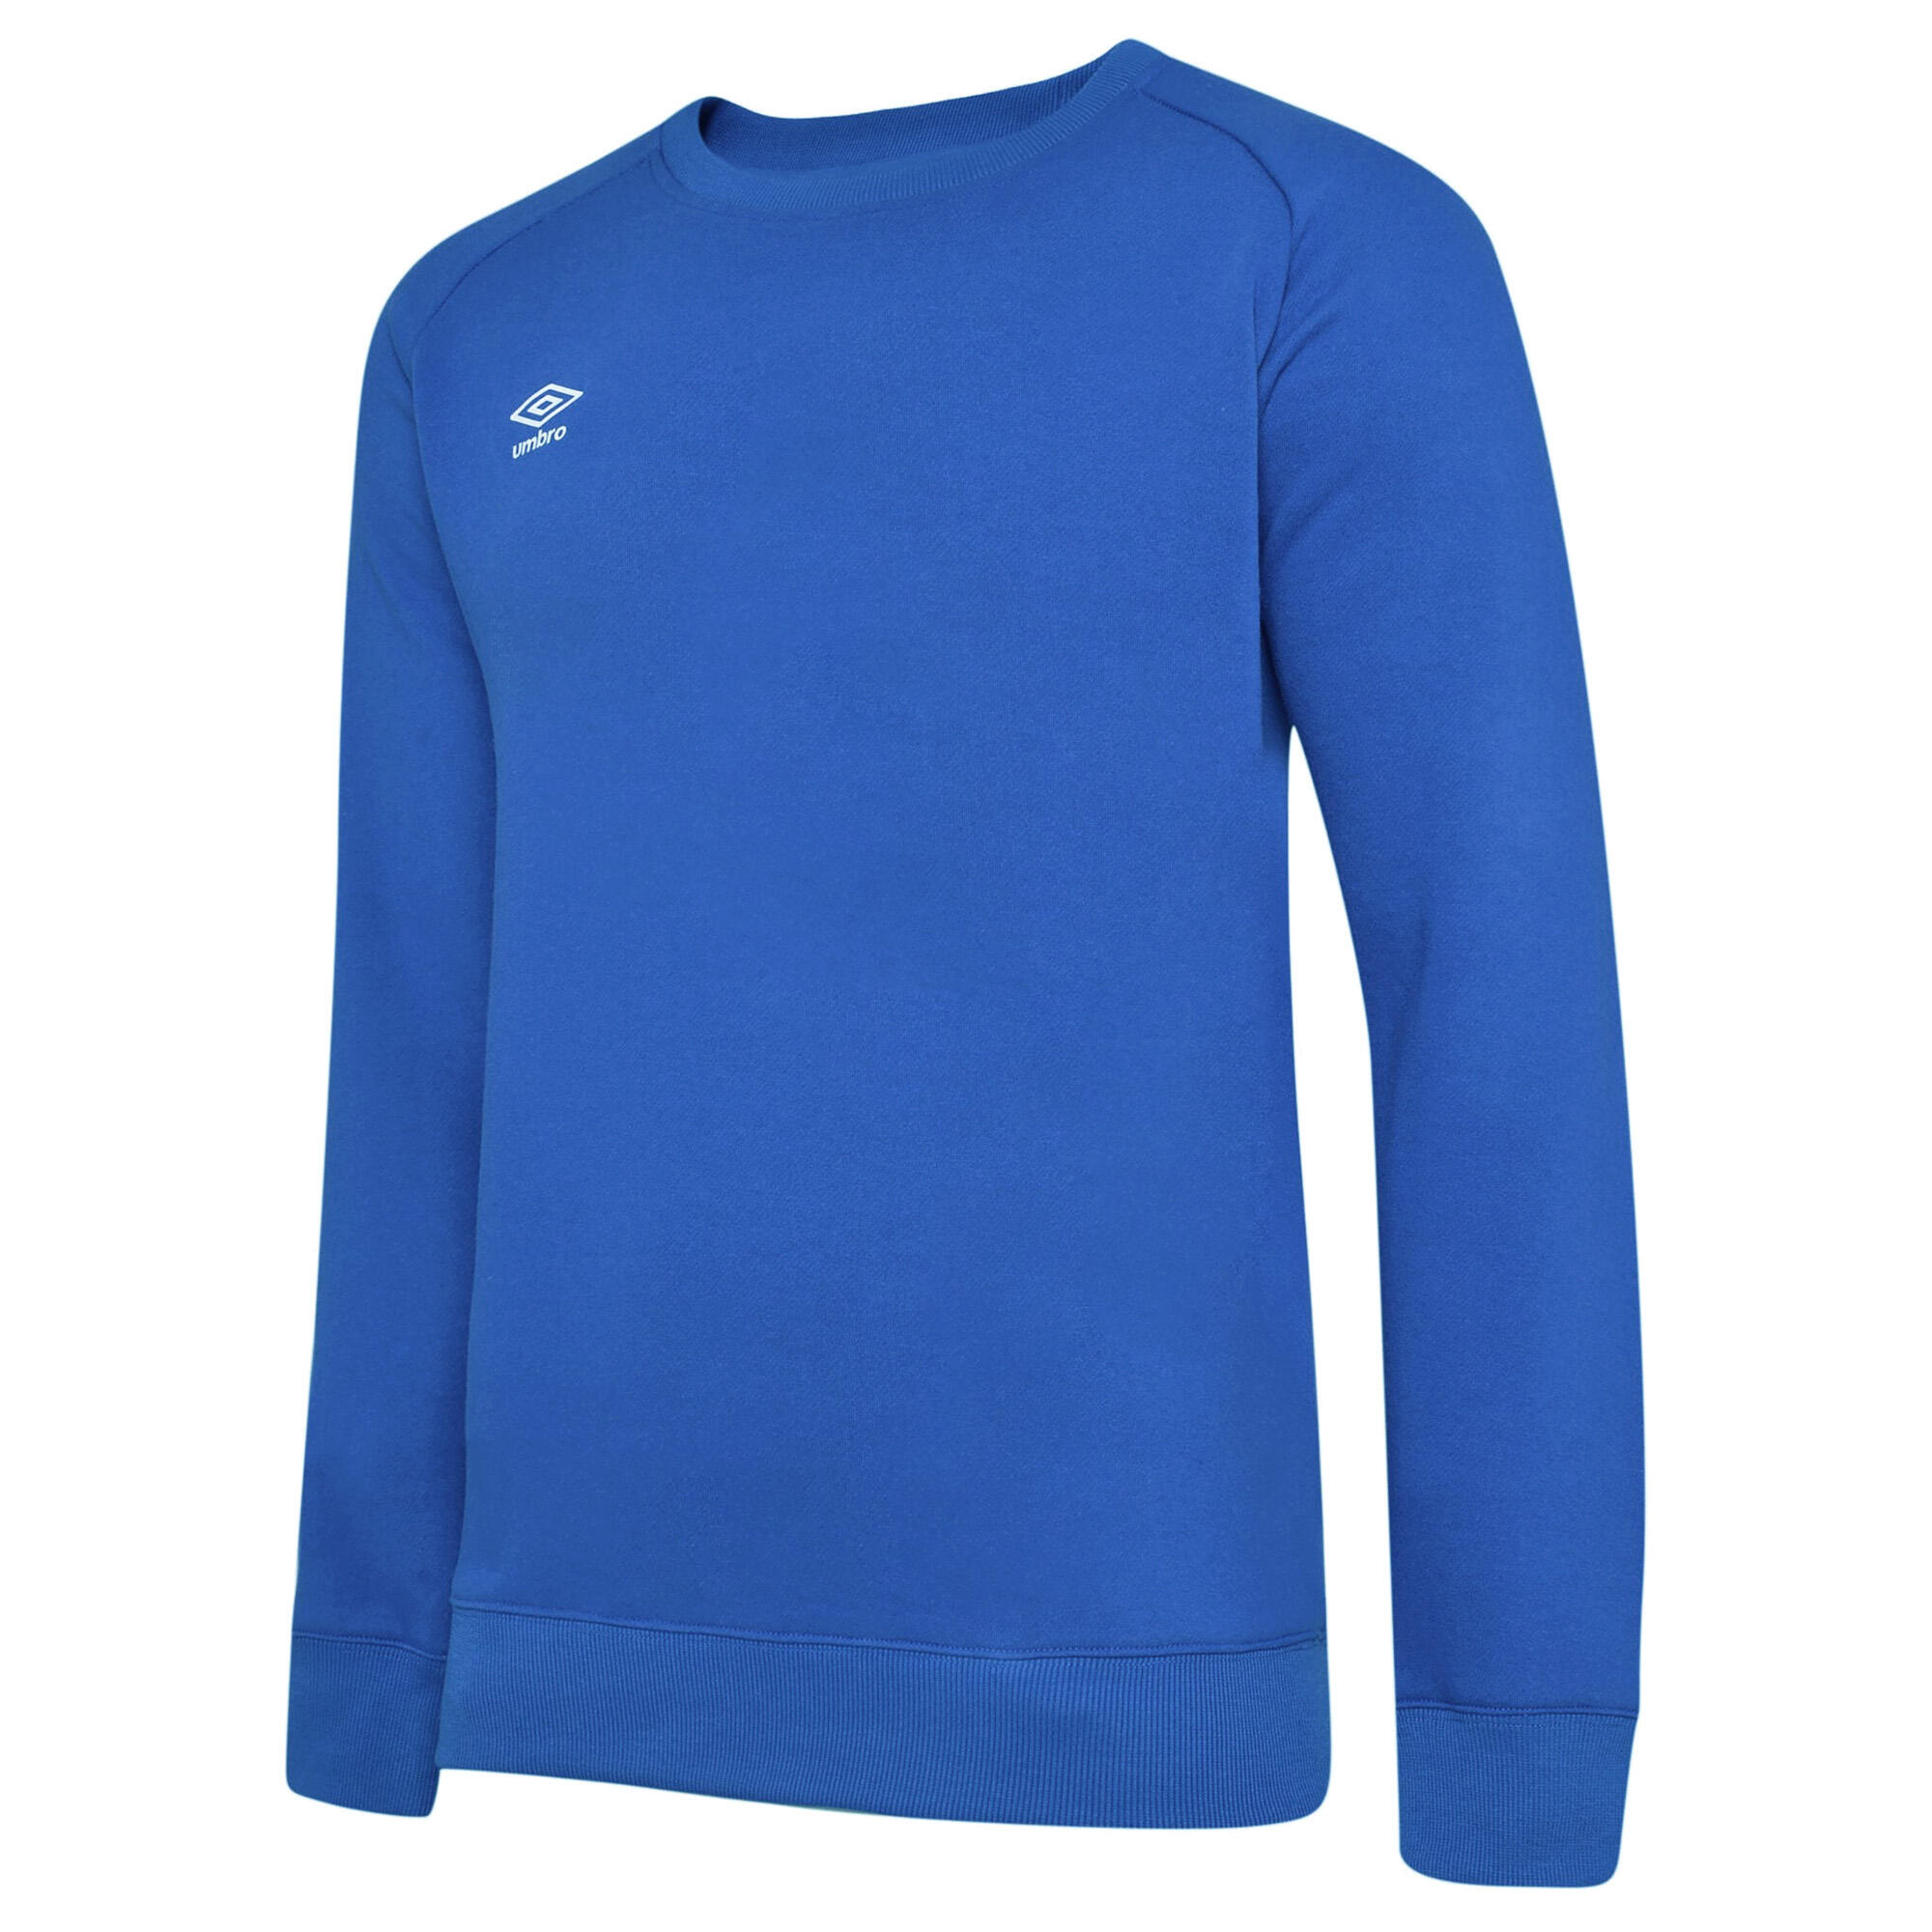 Womens/Ladies Club Leisure Sweatshirt (Royal Blue/White) 1/3